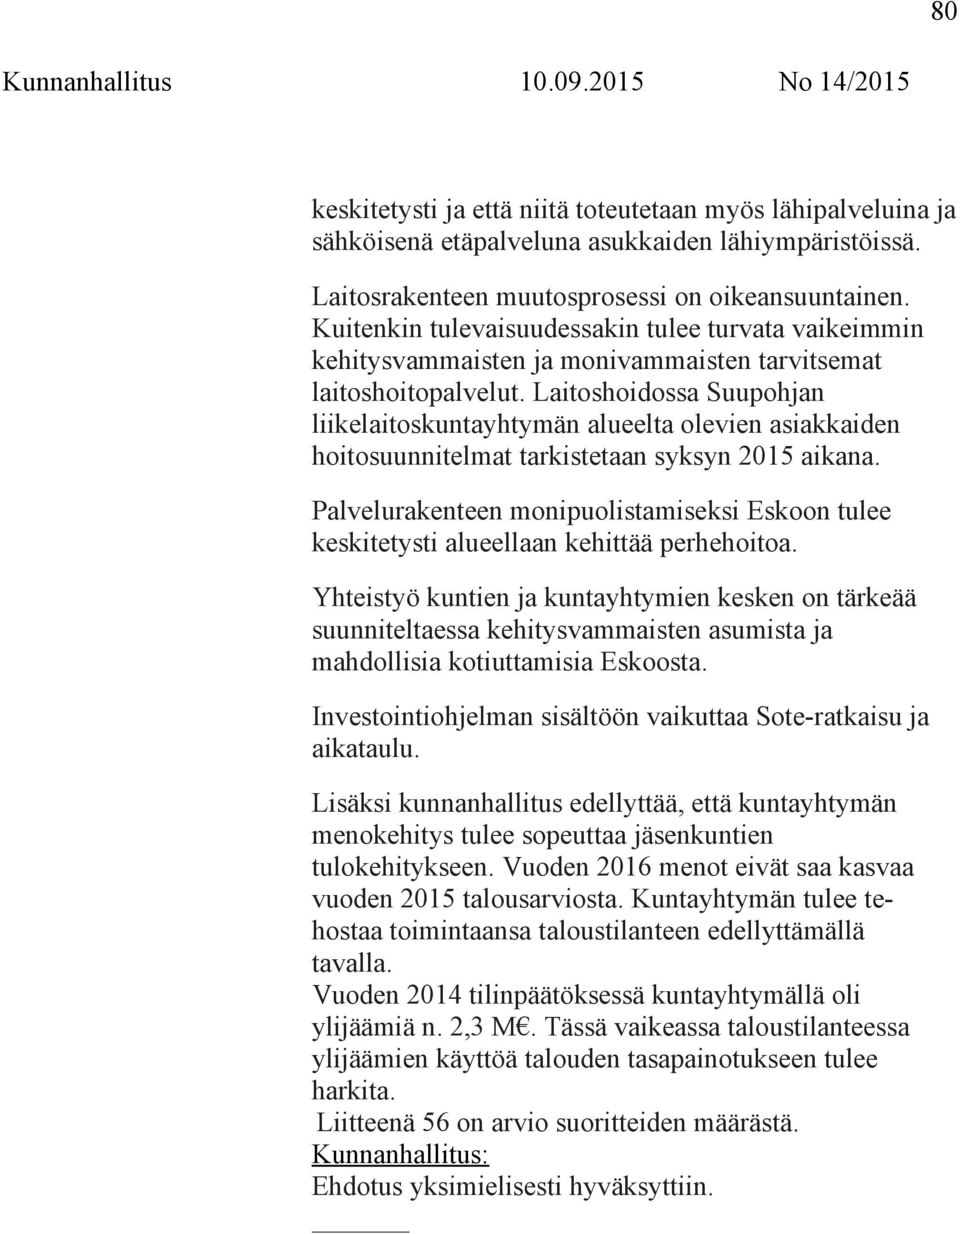 Laitoshoidossa Suupohjan liikelaitoskuntayhtymän alueelta olevien asiakkaiden hoitosuunnitelmat tarkistetaan syksyn 2015 aikana.